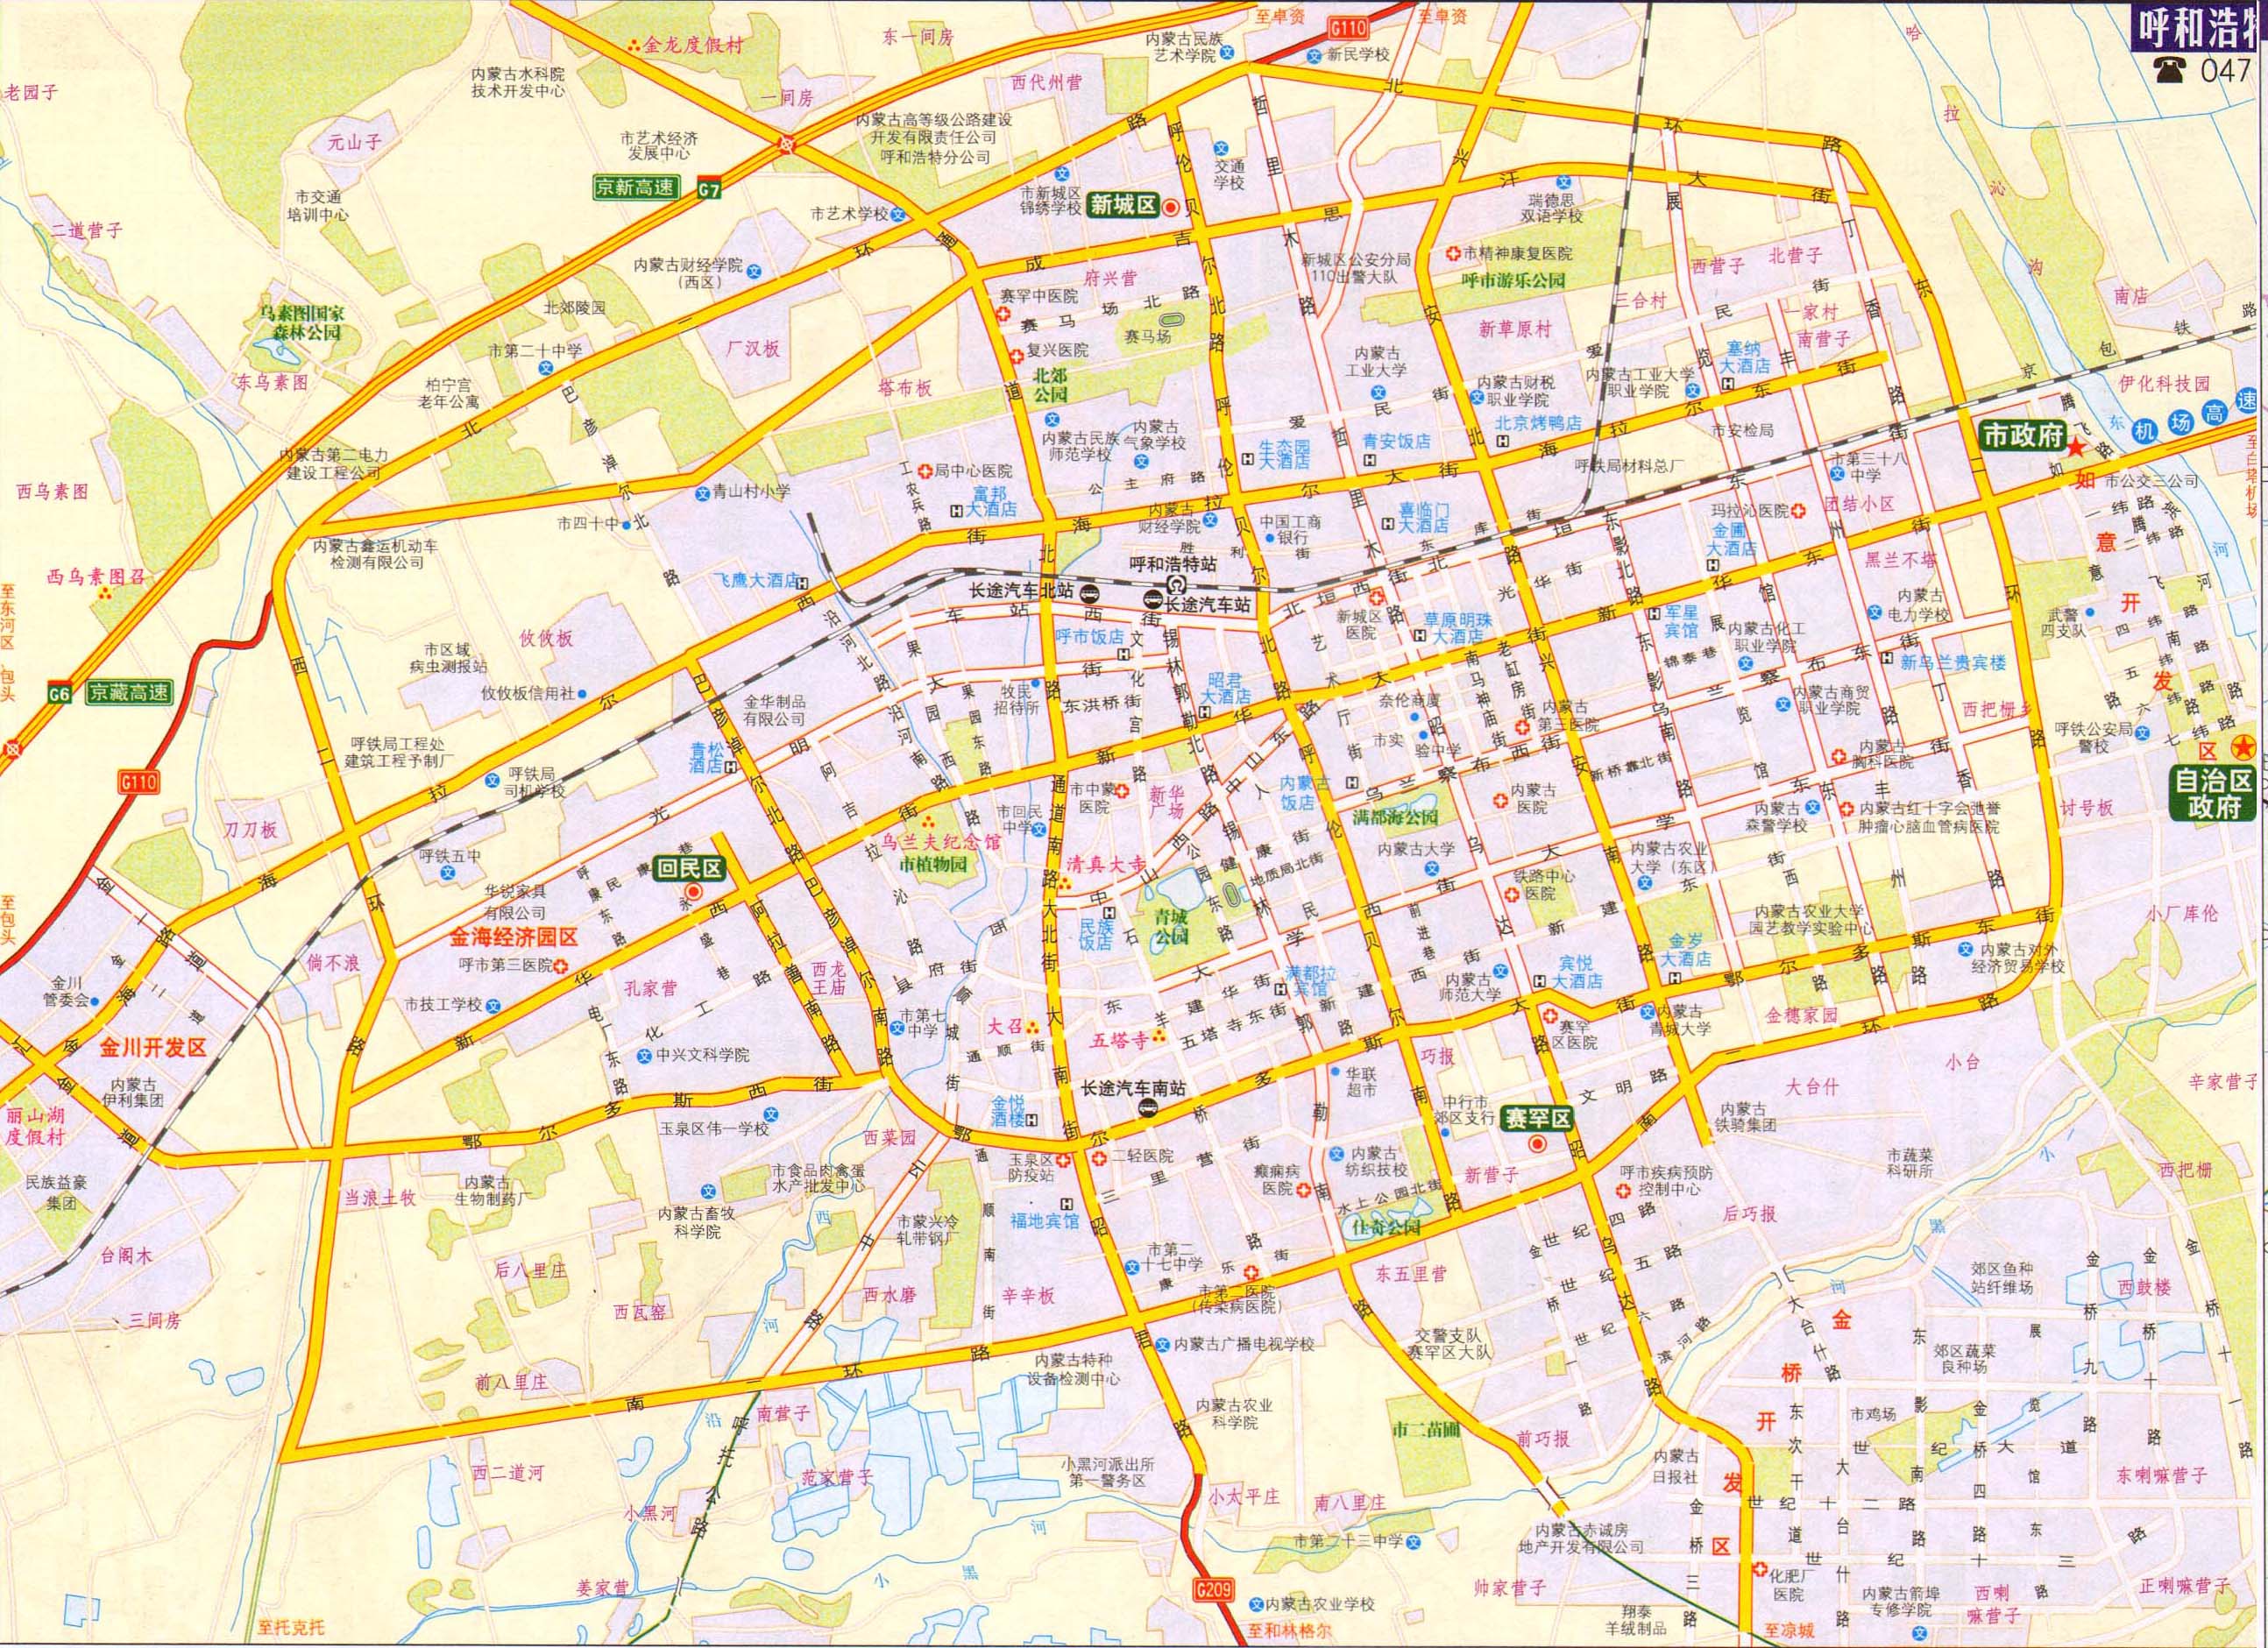 太原市交通地图2017版  | 2017年新版 |  下一张地图: 南昌交通地图2图片